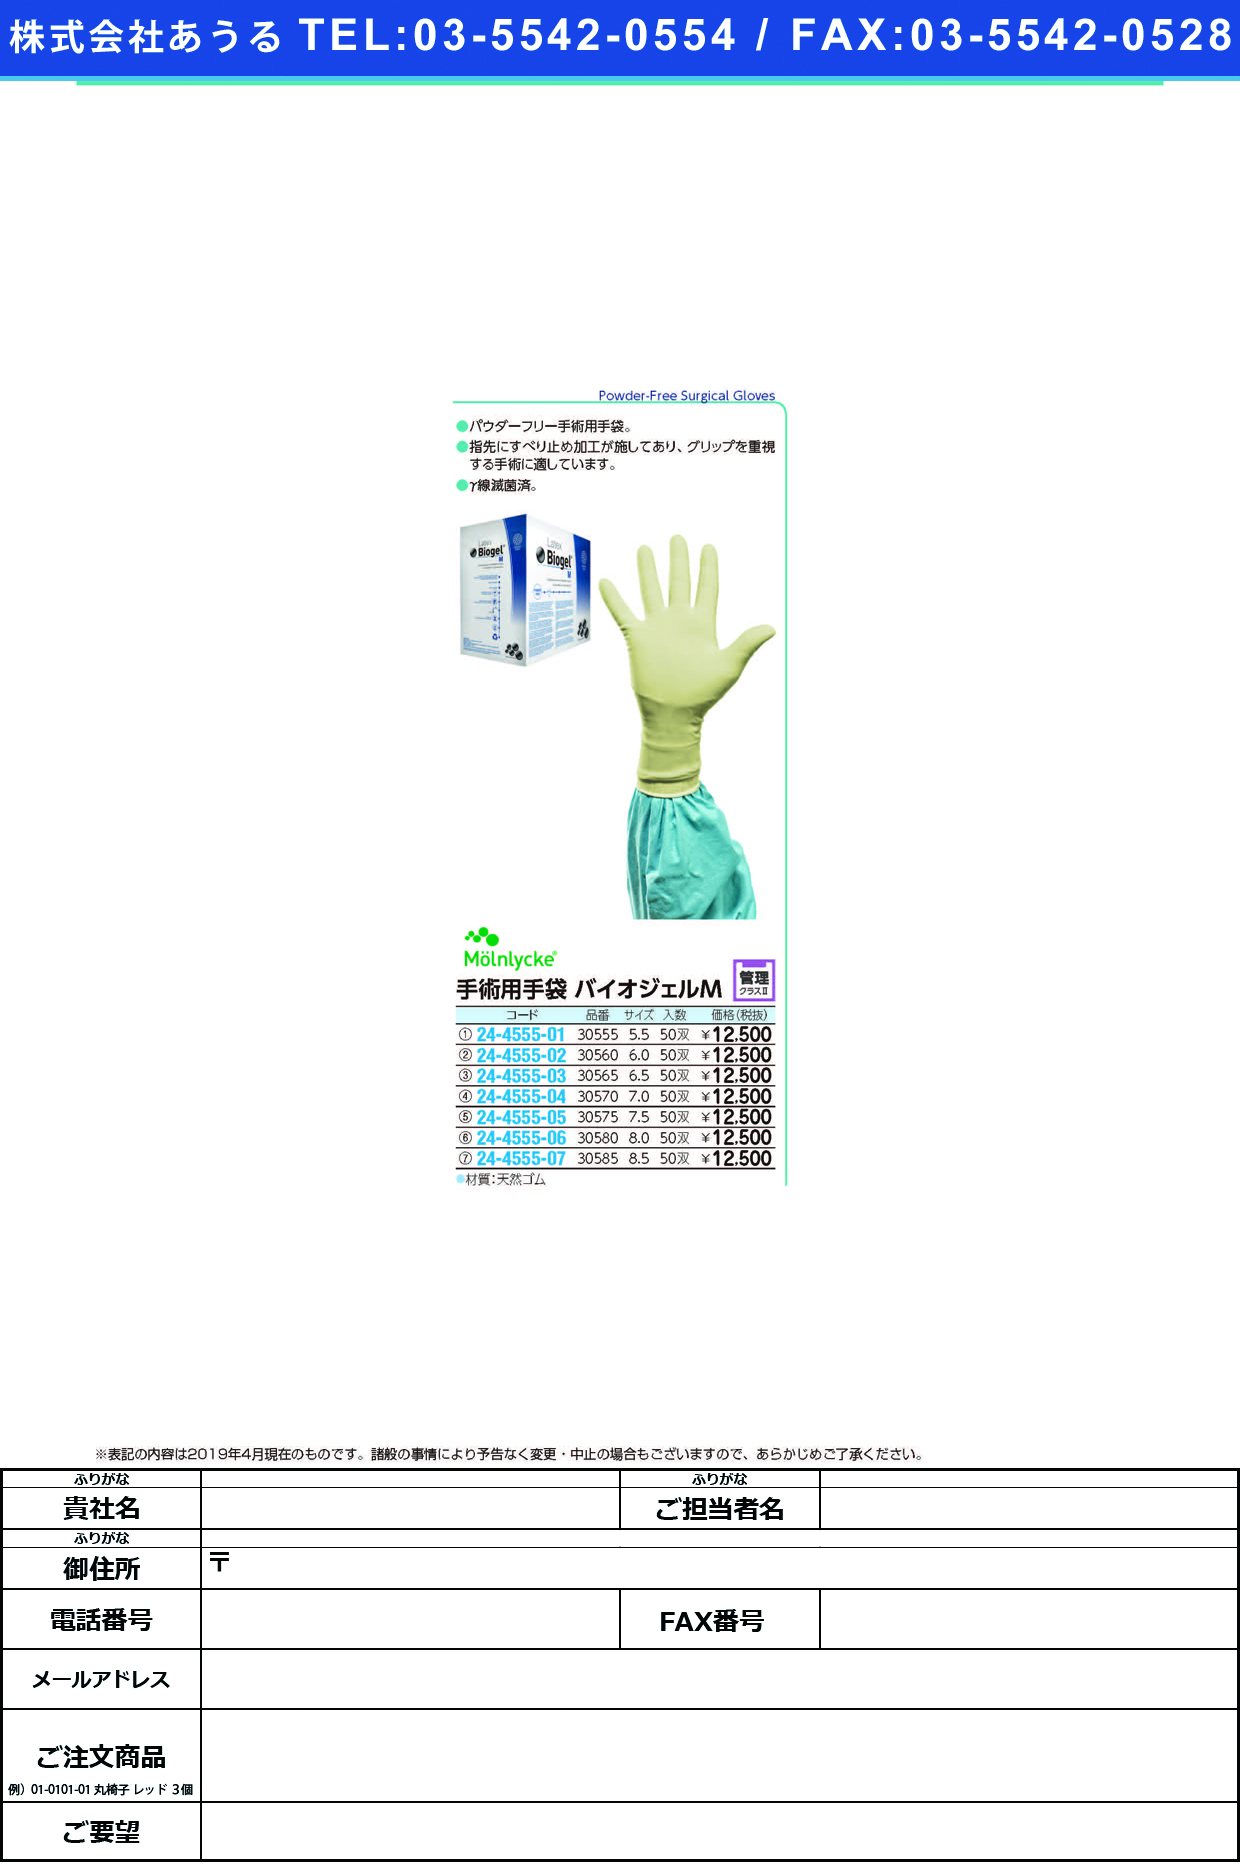 手術用手袋バイオジェルＭ 30560(6.0)50ｿｳｲﾘ ﾊﾞｲｵｼﾞｪﾙM(メンリッケヘルスケア)